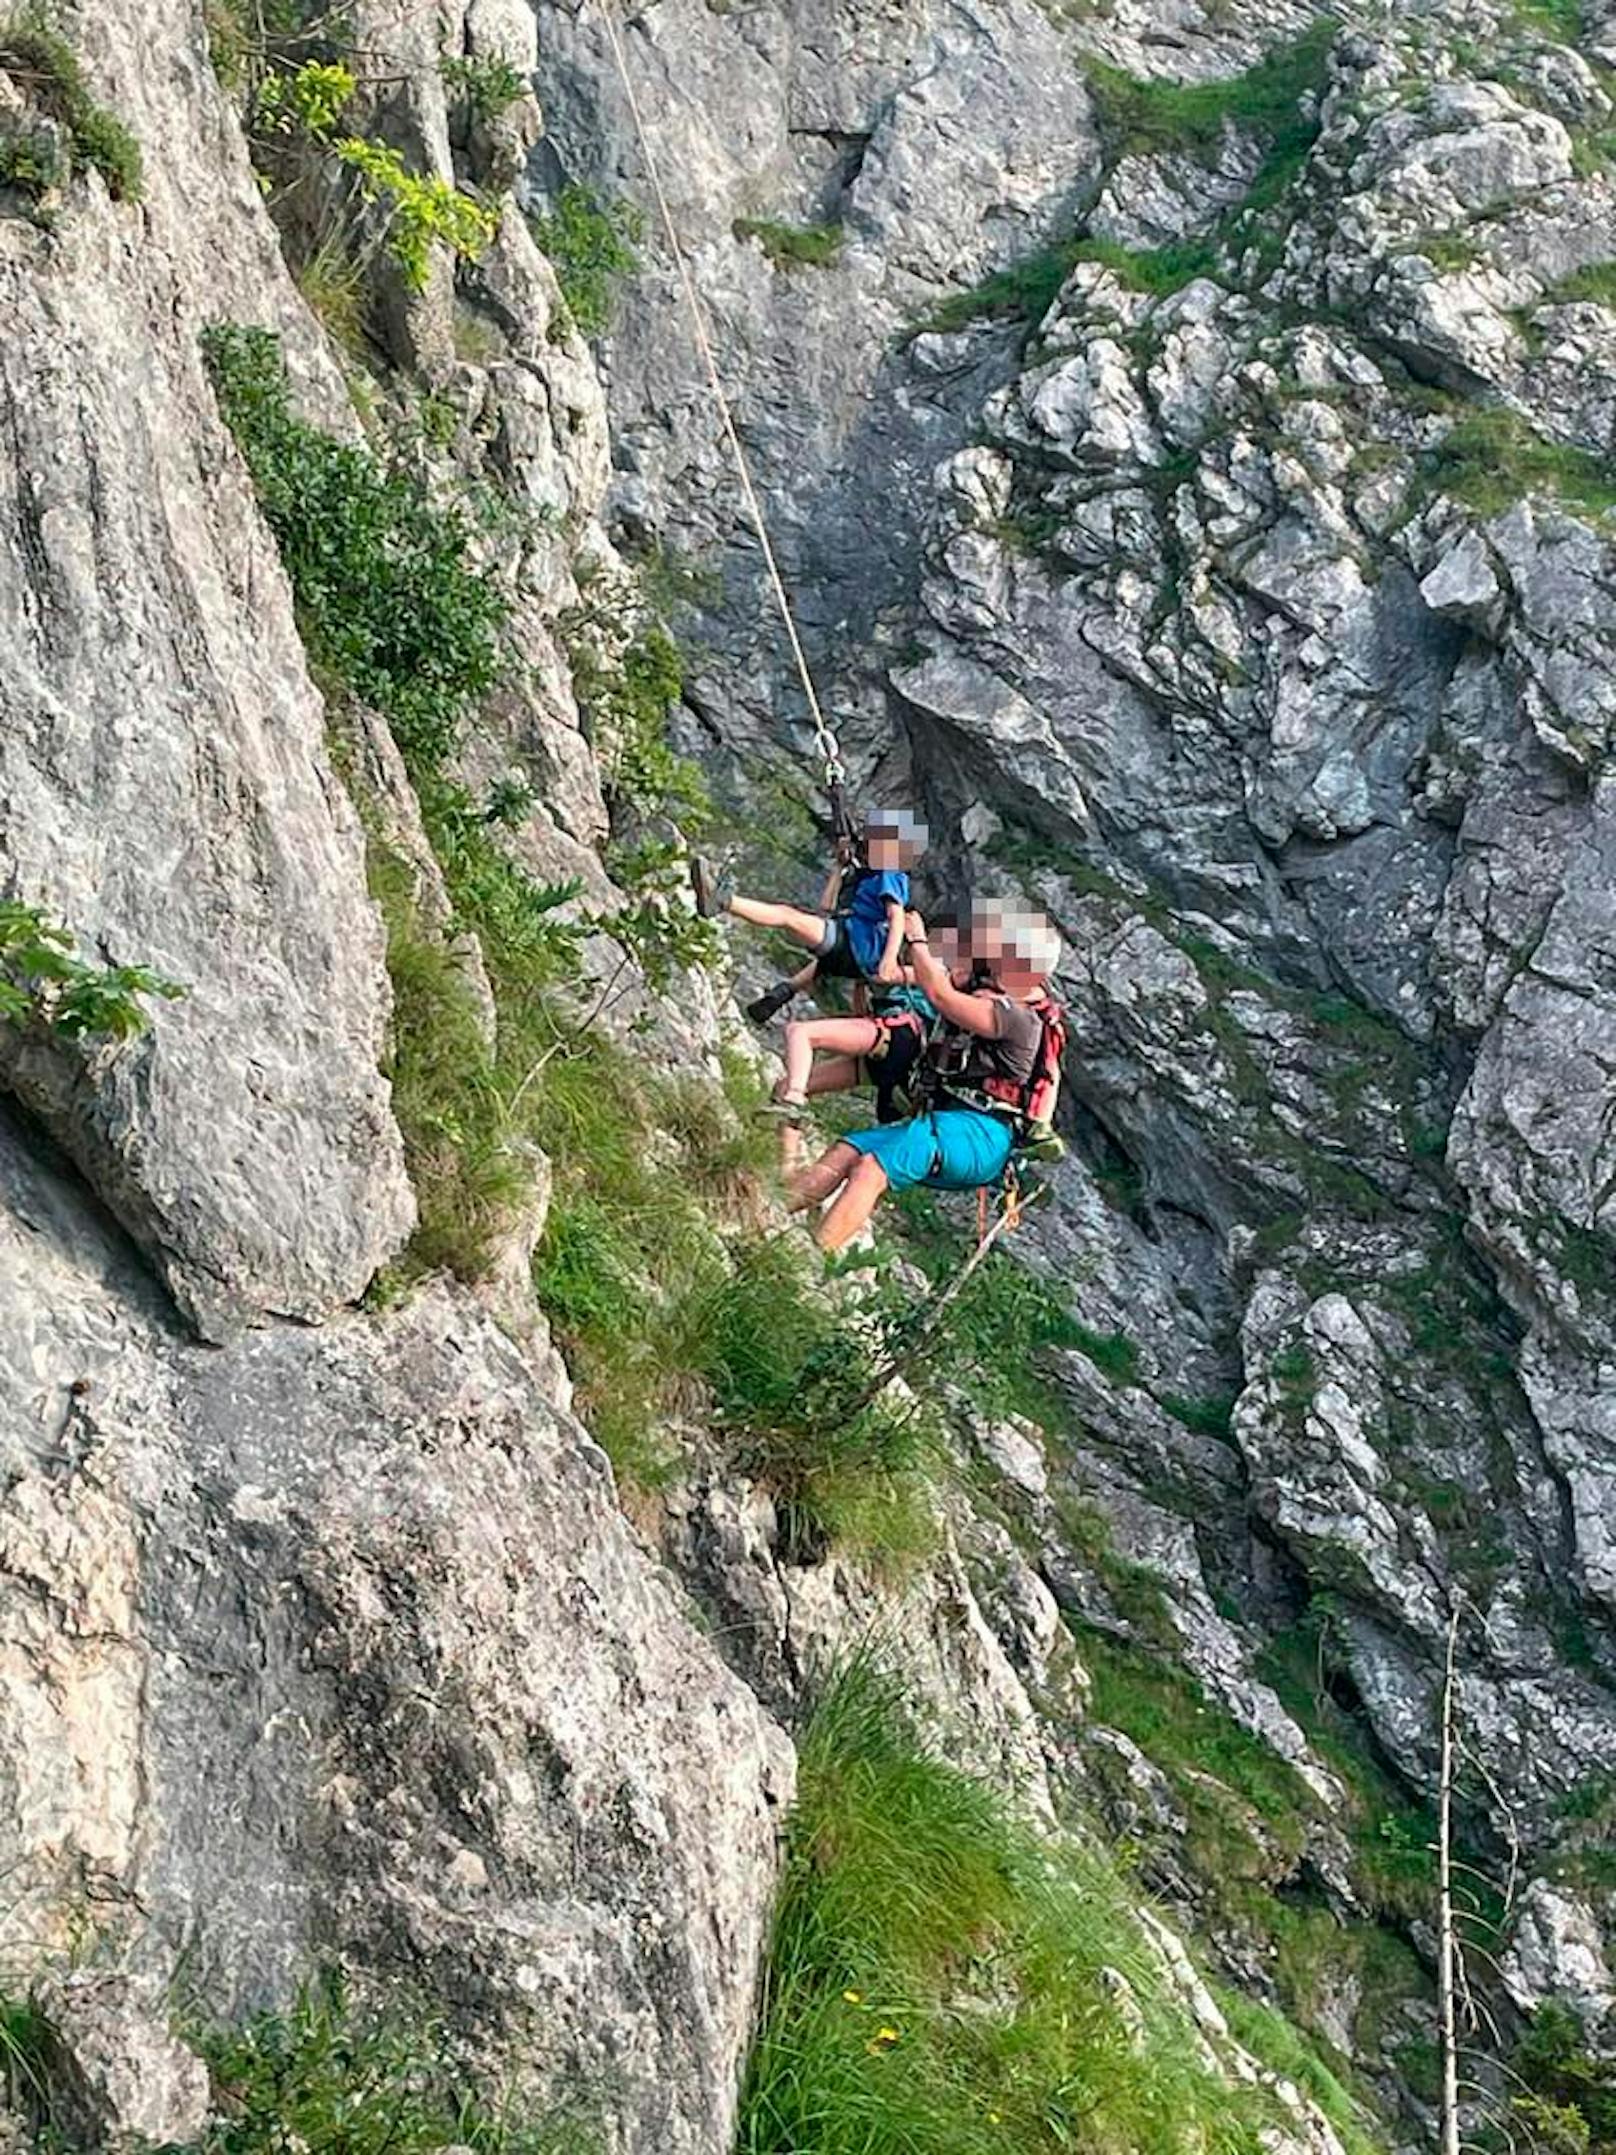 Kinder mit Sandalen am Berg – Eltern sollen 1.700 € zahlen